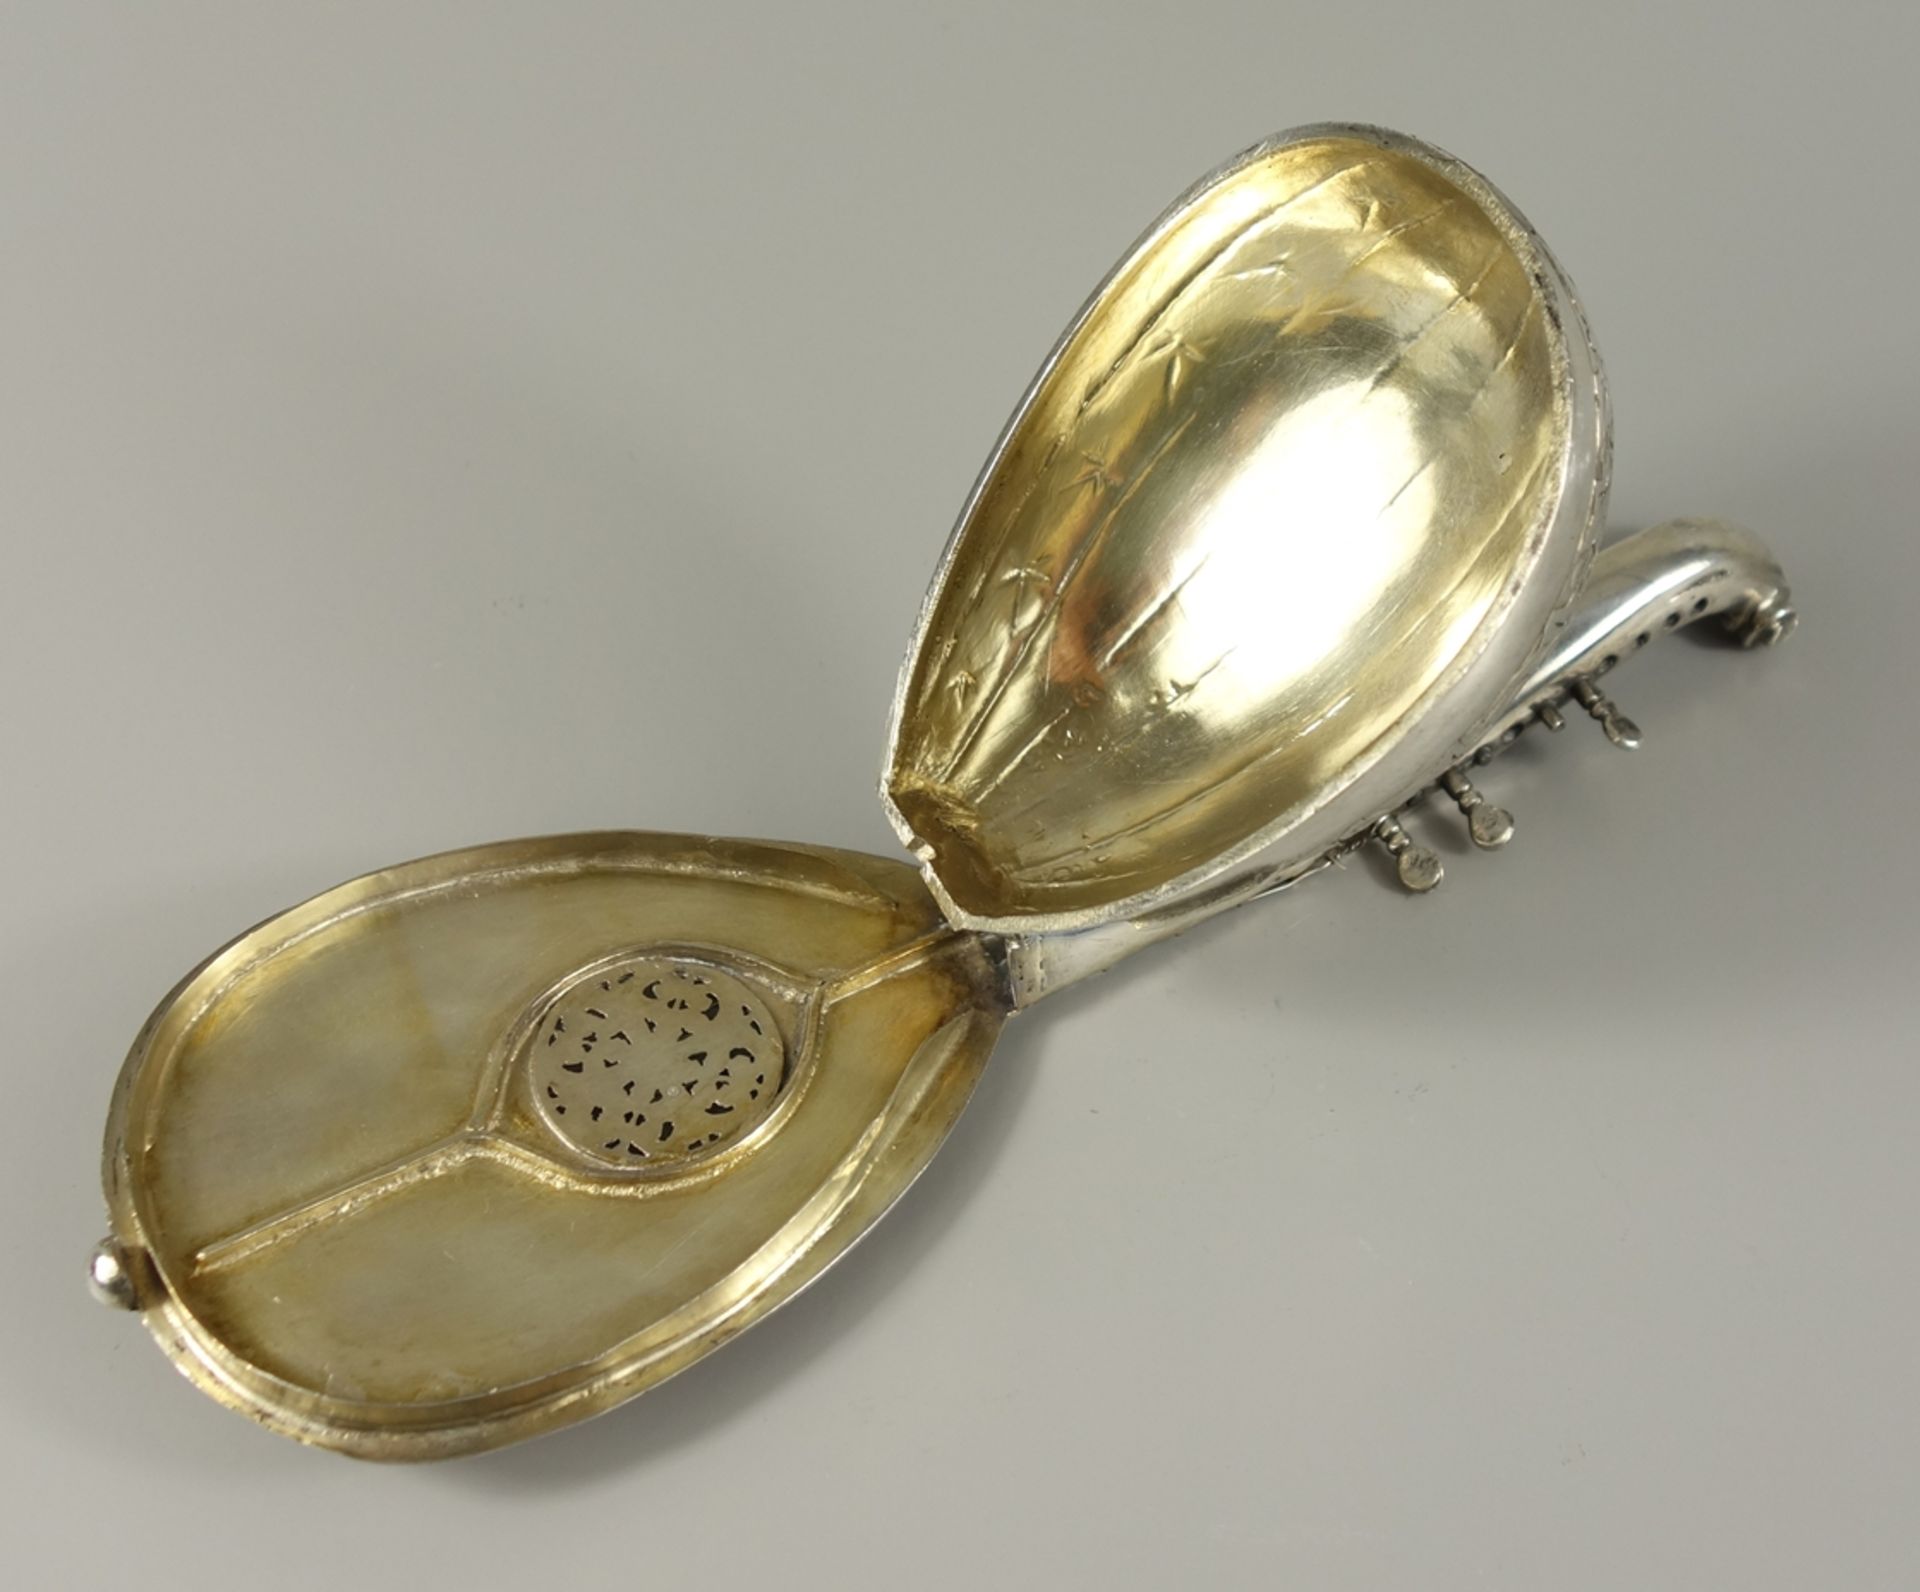 Dose in Form einer Mandoline, Silber geprüft, min. 800/1000, floral graviert, scharniertes - Bild 3 aus 3